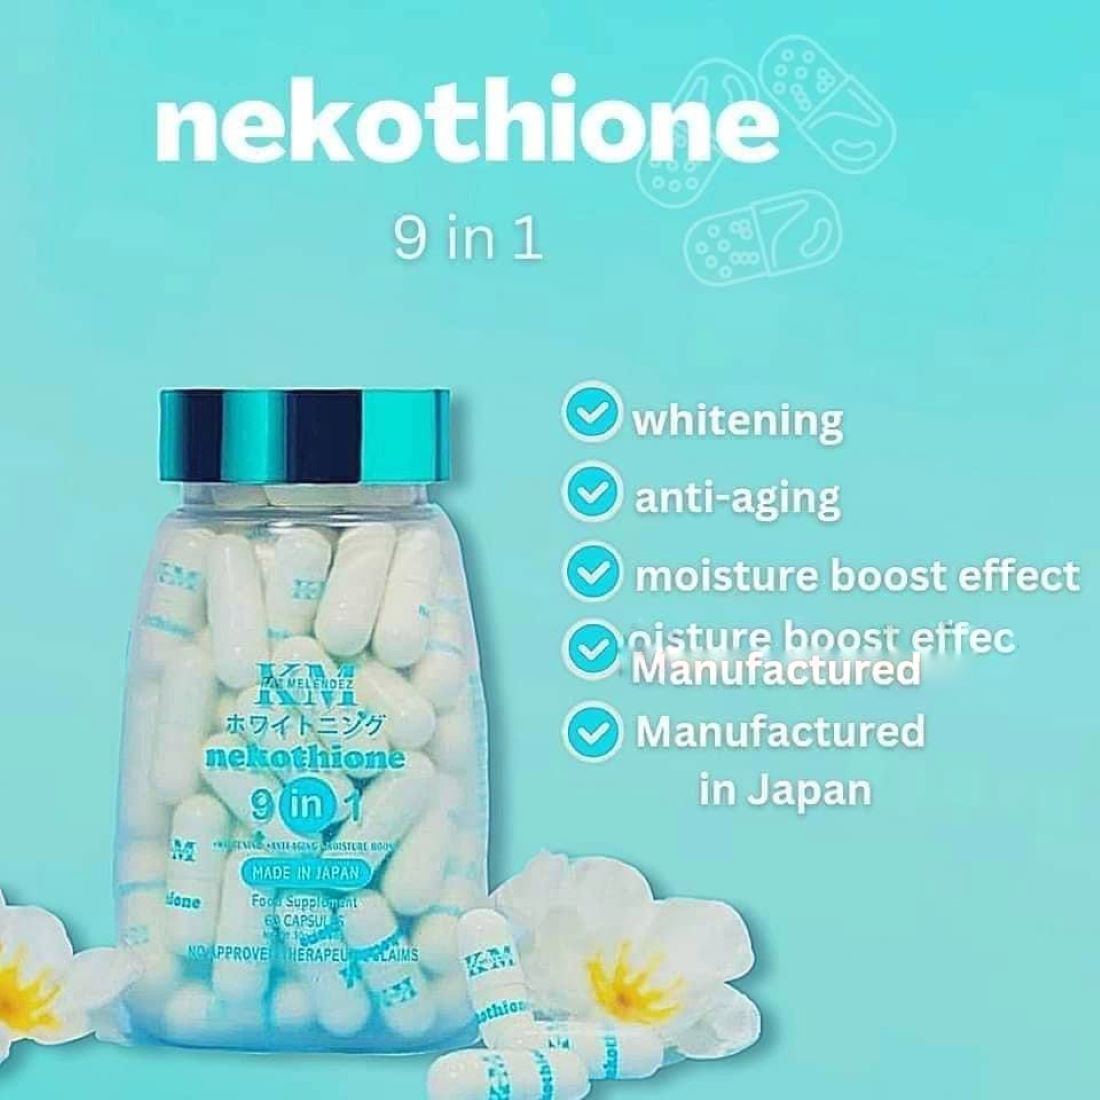 Nekothione Glutathione & NekoCee By Kath Melendez